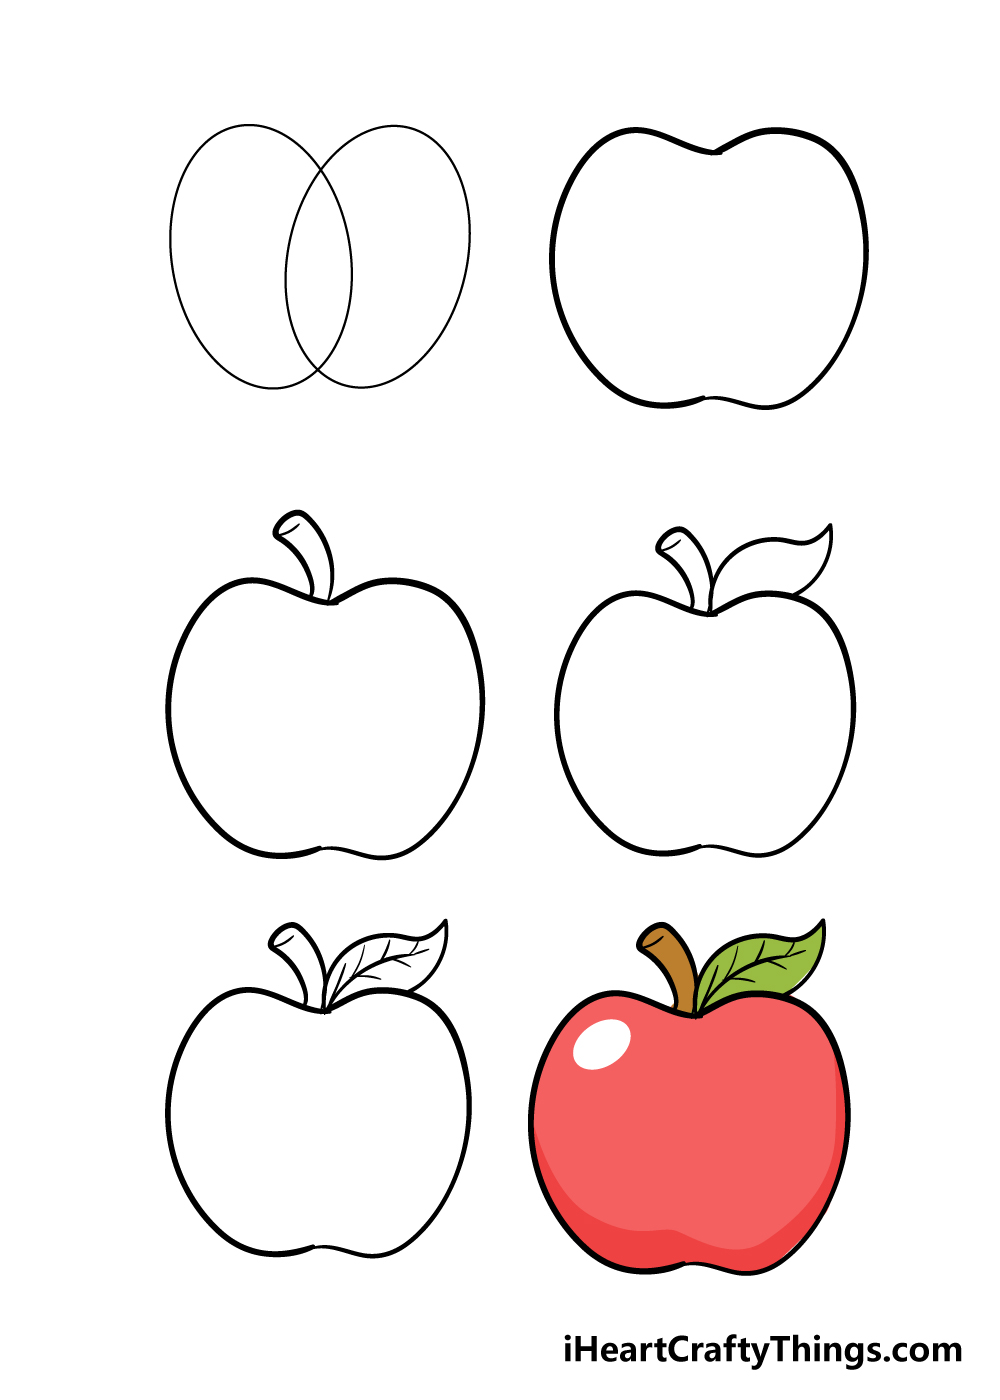 Apple in 6 steps - Hướng dẫn chi tiết cách vẽ quả táo đơn giản với 6 bước cơ bản